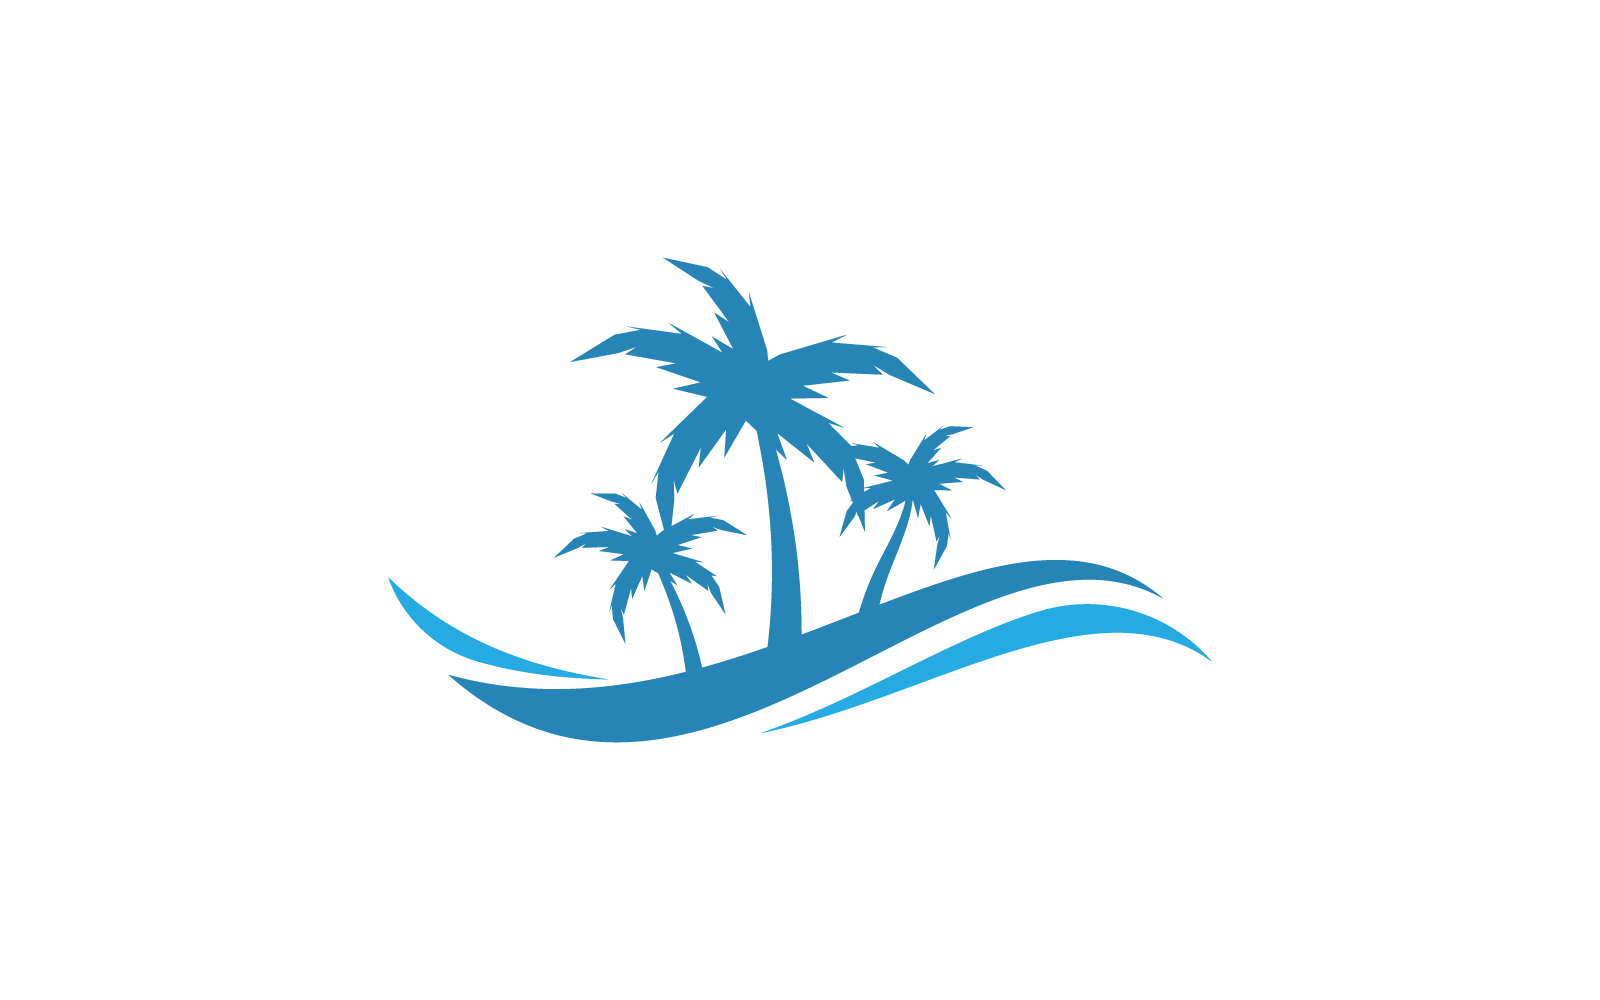 Palm tree leaf illustration logo flat design